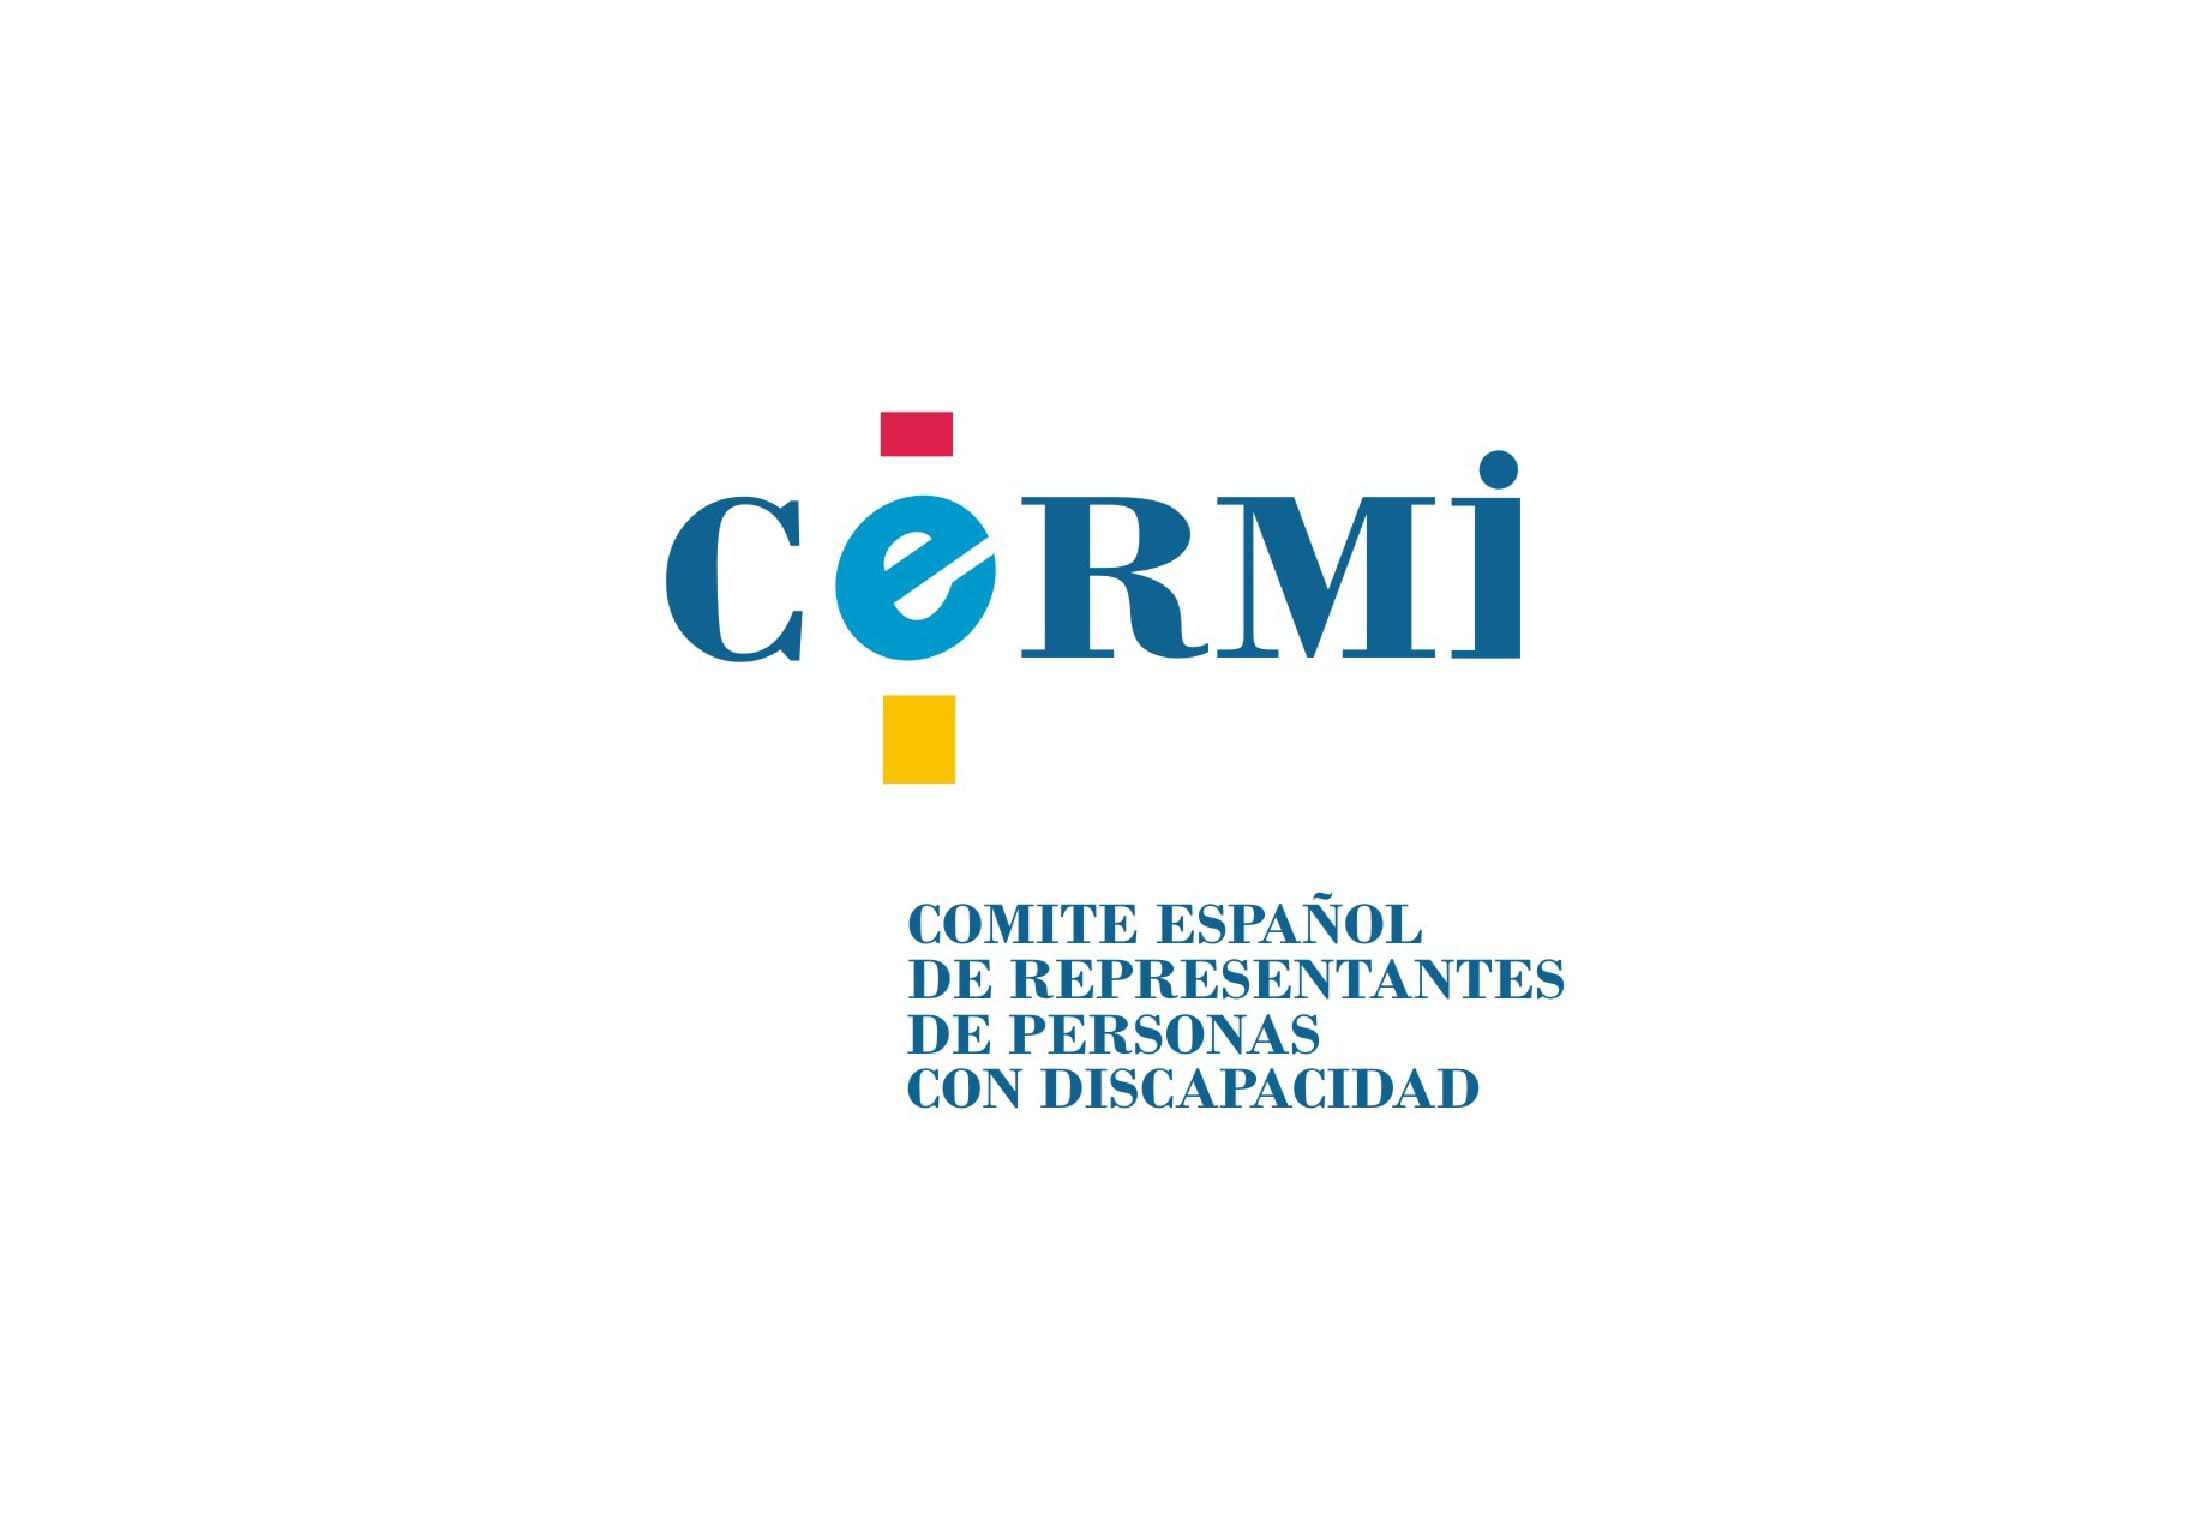 Participación en comisiones y eventos como miembros de CERMI Estatal